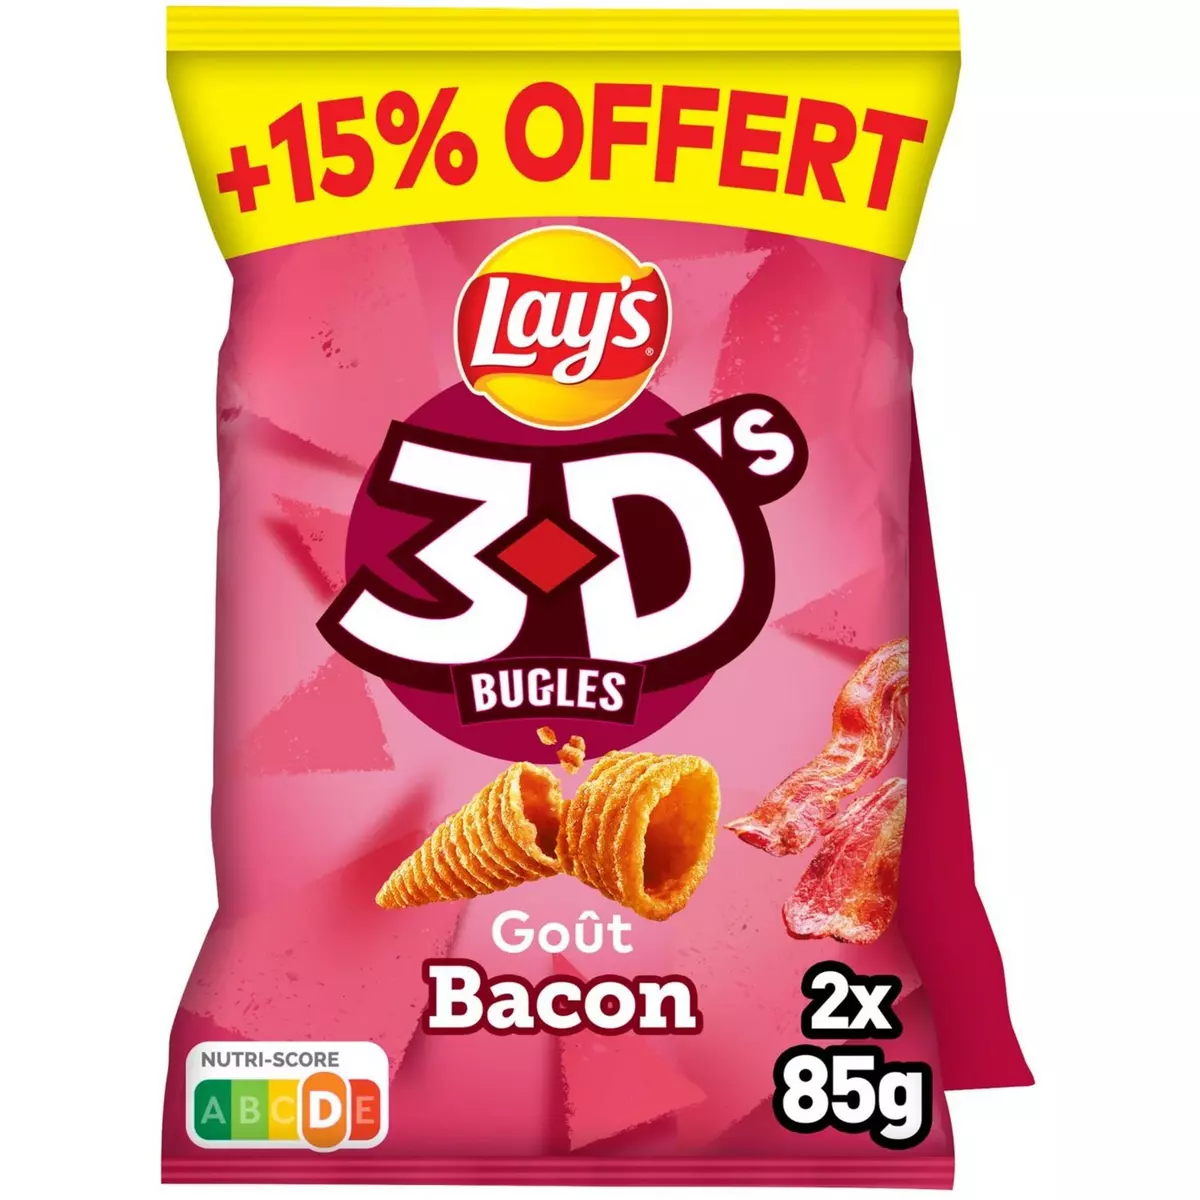 LAY'S Biscuits soufflés 3D's bugles goût bacon lot de 2 2x85g + 15% offert